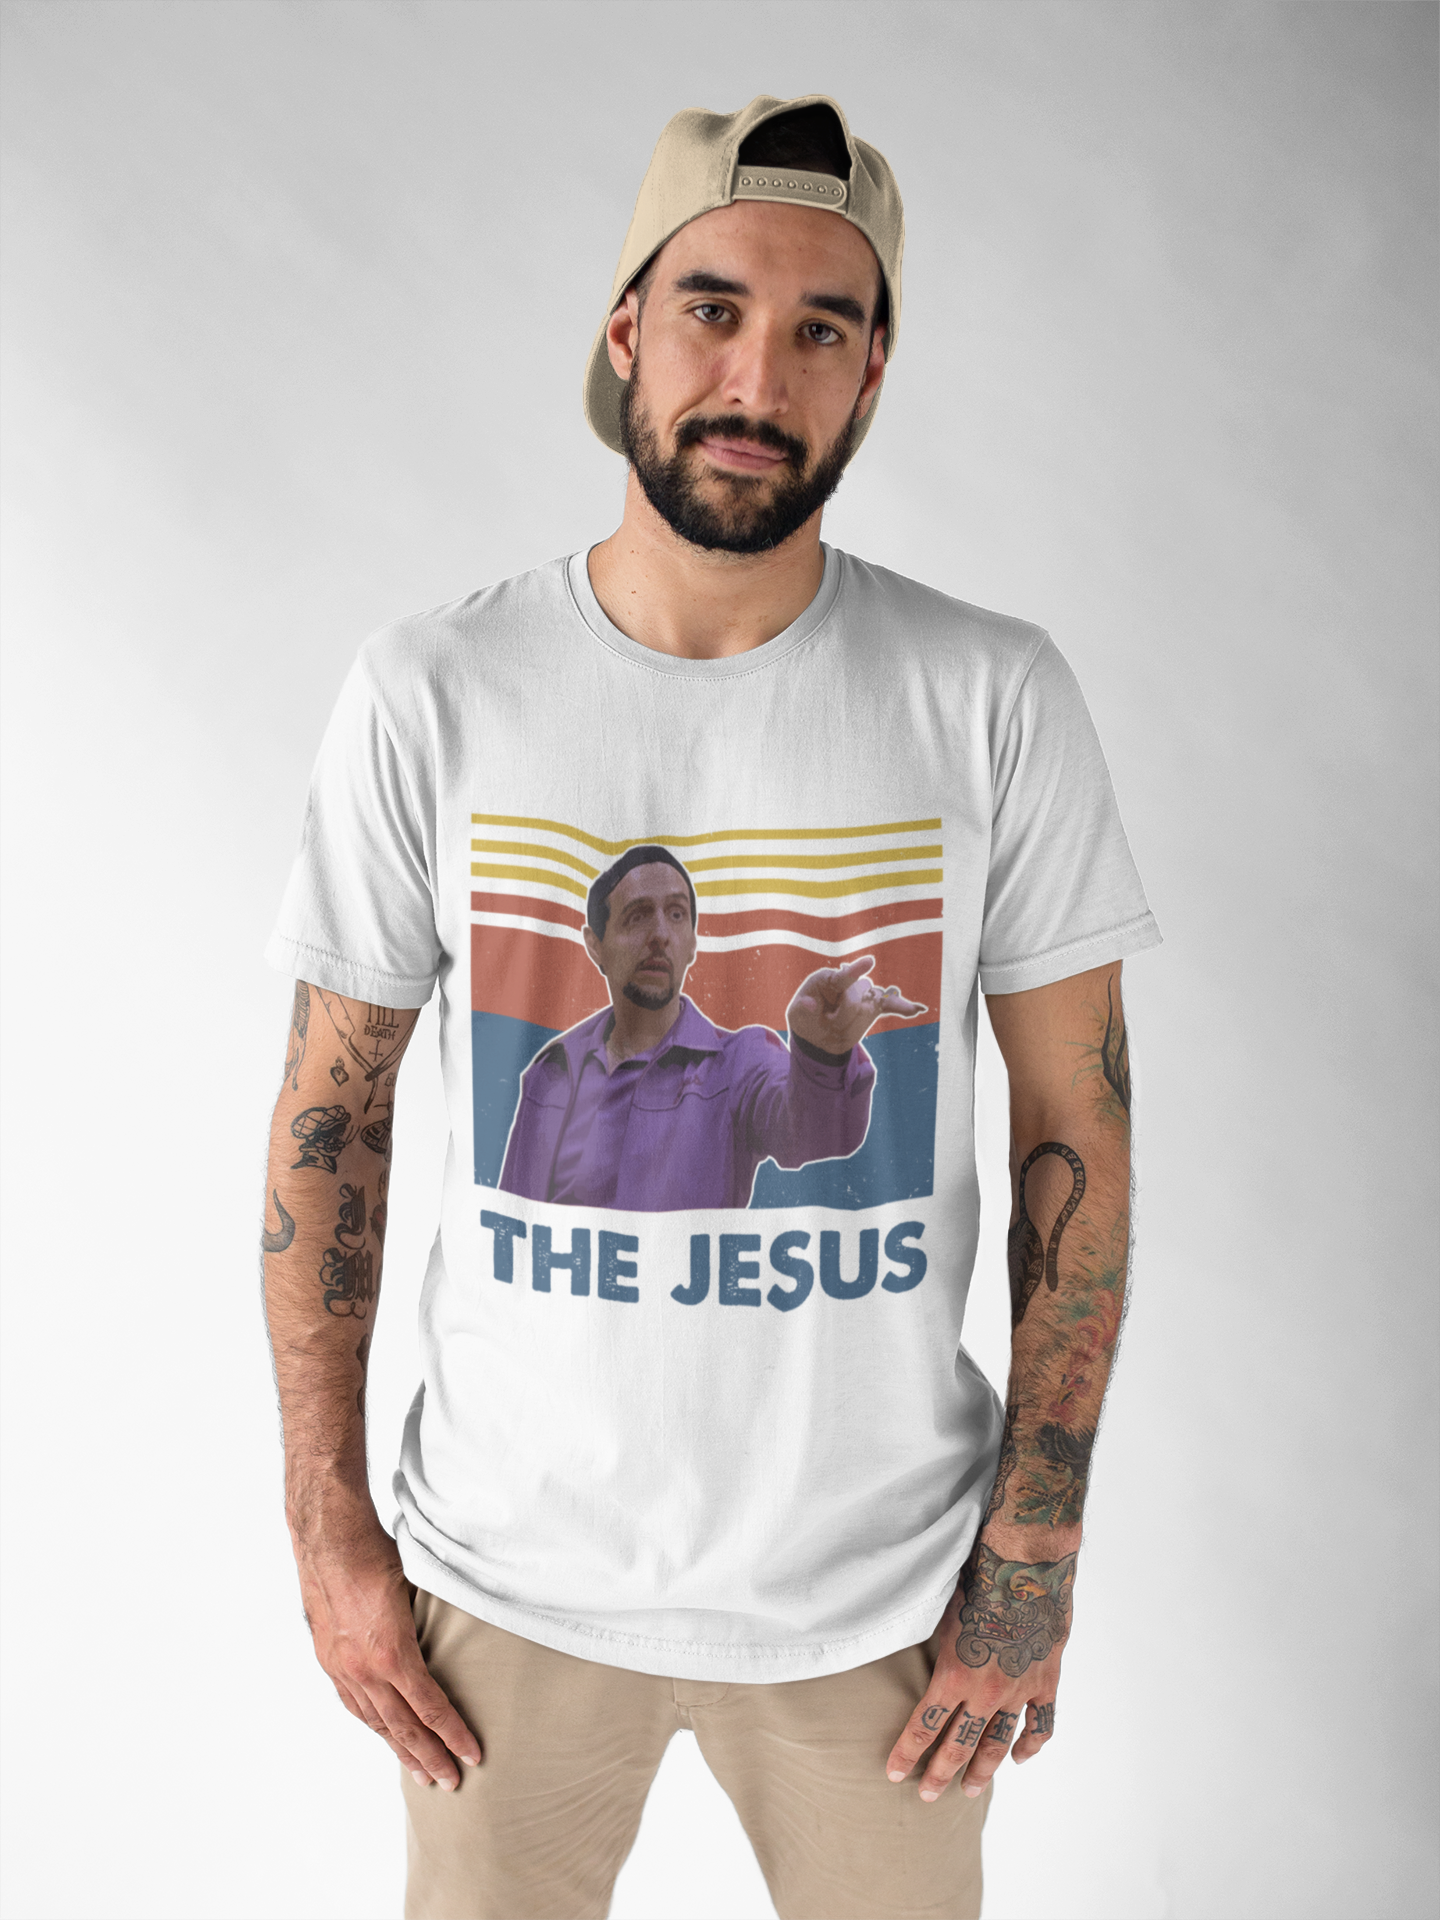 The Big Lebowski T Shirt, Jesus Quintana T shirt, The Jesus Vintage Tshirt